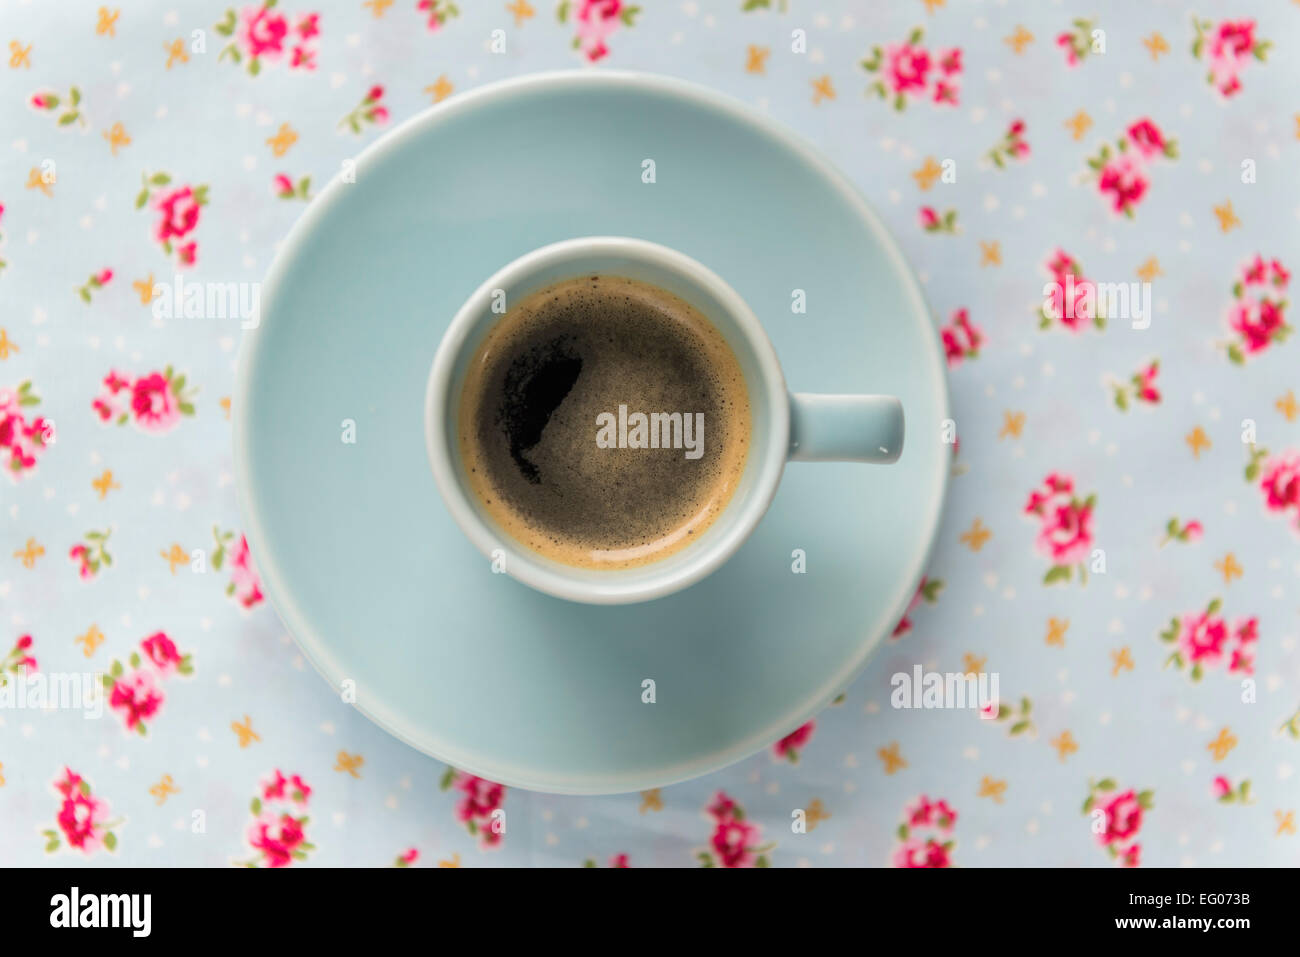 Espresso-Kaffeemaschine in einem blauen Tasse und Untertasse auf einer floral Tischdecke. Stockfoto